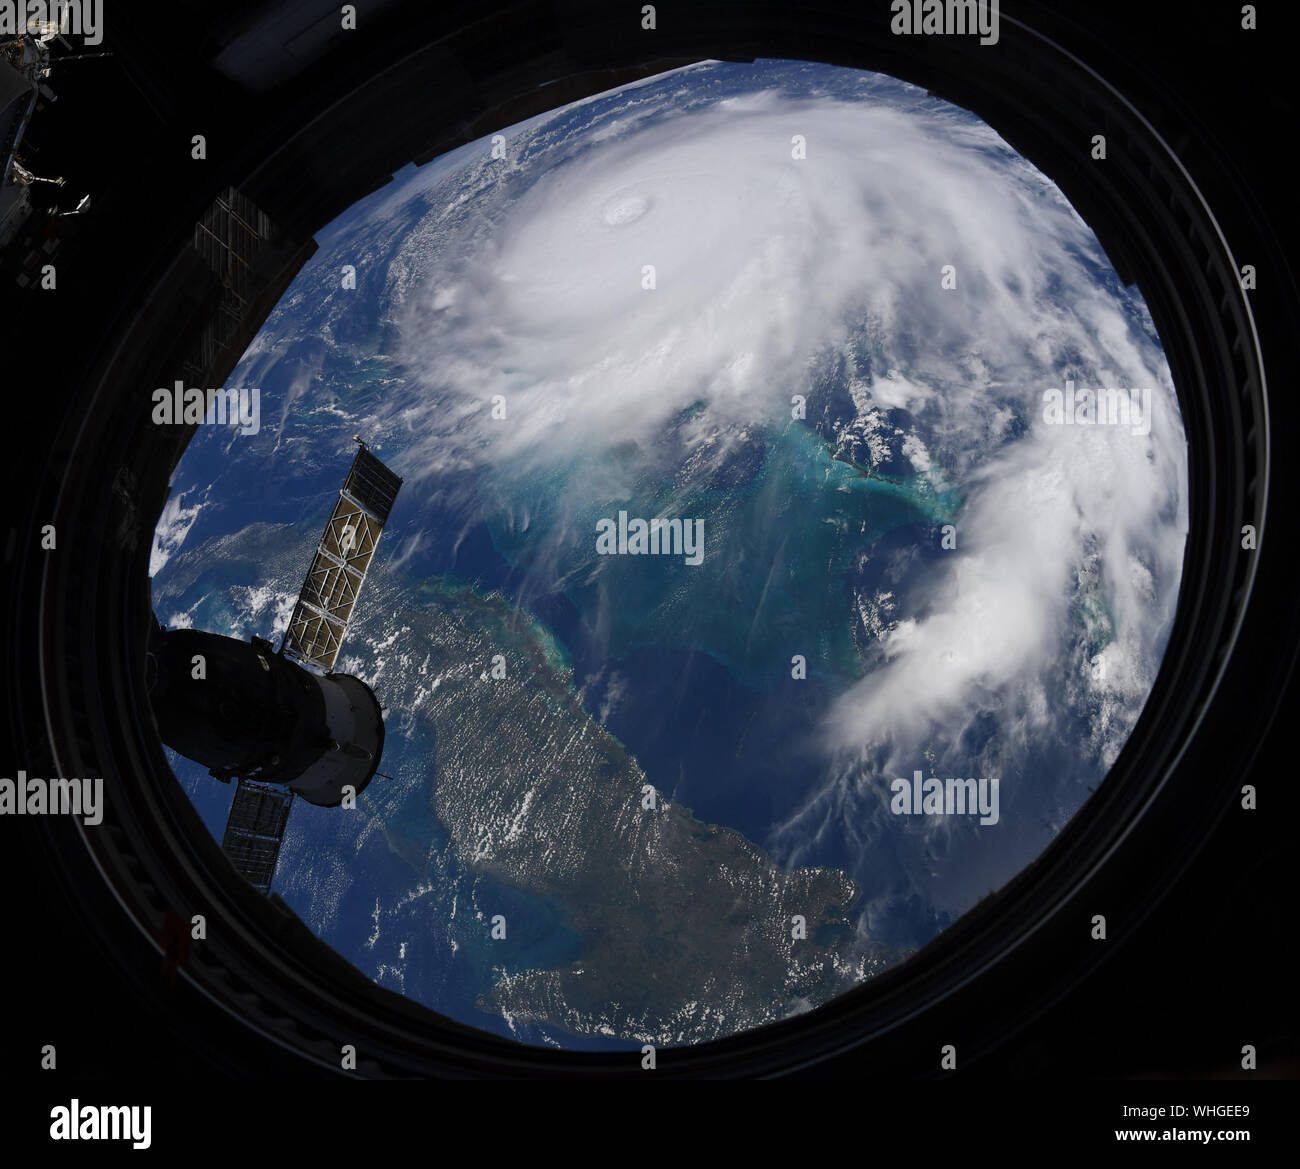 Space Station. 02 Sep, 2019. NASA-Astronaut Christian Koch riss dieses Bild von Hurrikan Dorian von der Internationalen Raumstation während einer Überführung am 2. September 2019. Ab 2:00 Uhr EST, maximal unterstützte Winde in der Nähe von 150 mph (240 km/h), Dorian ein extrem gefährlichen Hurrikan der Kategorie 4 auf der Saffir-Simpson-Skala Wind. Obwohl die allmähliche Abschwächung prognostiziert wird, Dorian wird erwartet, einen mächtigen Hurrikans in den nächsten Tagen bleiben. Credit: NASA/UPI UPI/Alamy leben Nachrichten Stockfoto